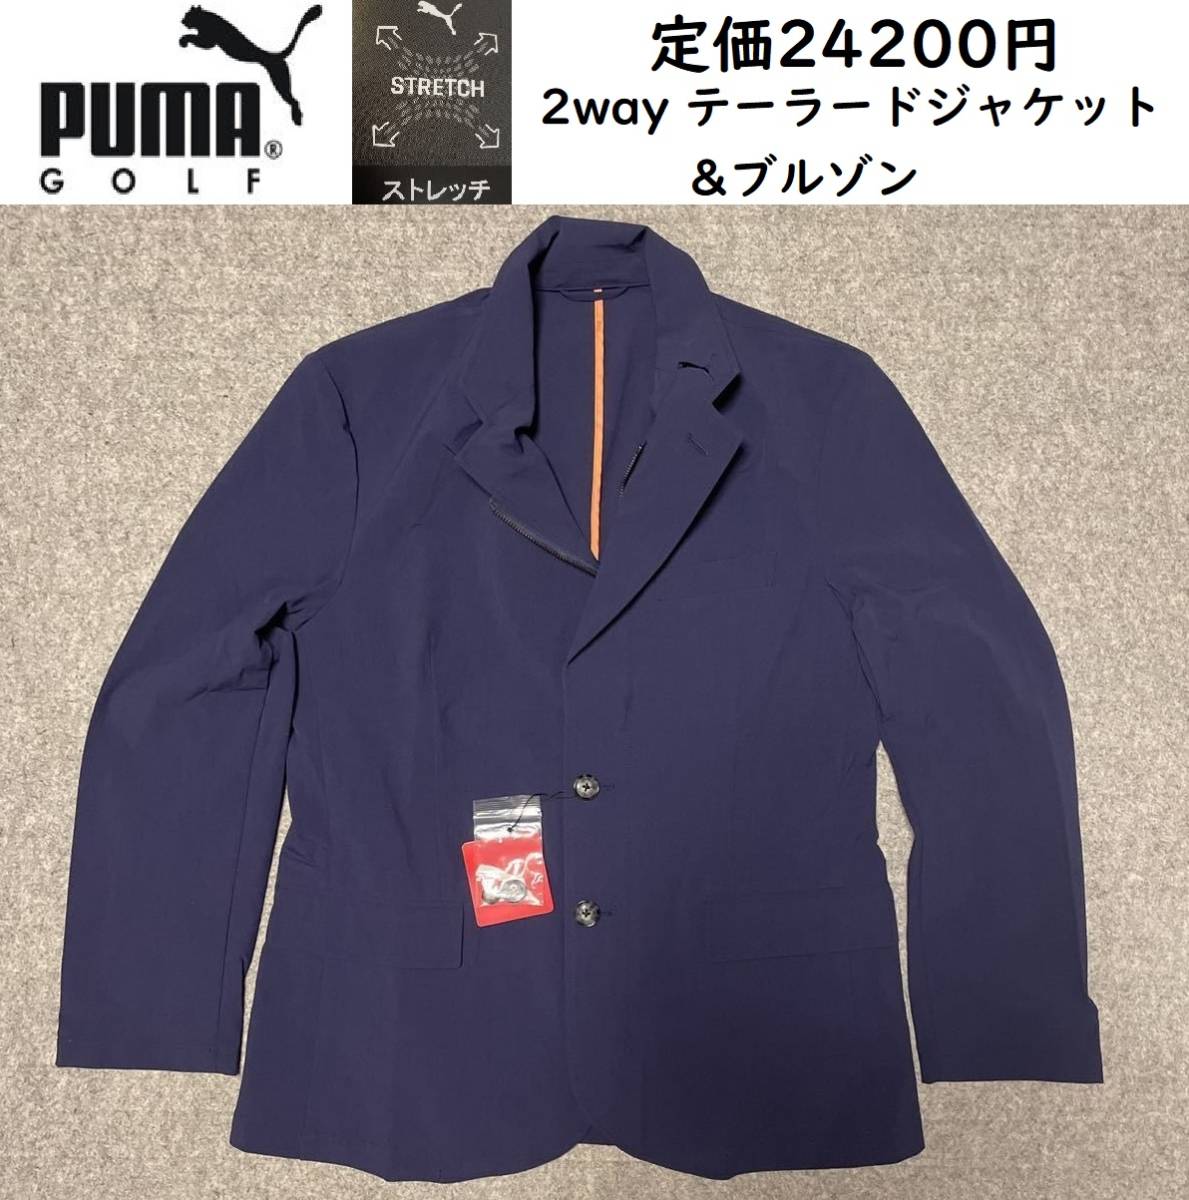 Mサイズ 定価24200円 新品 PUMA GOLF 4WAY ストレッチ テーラード